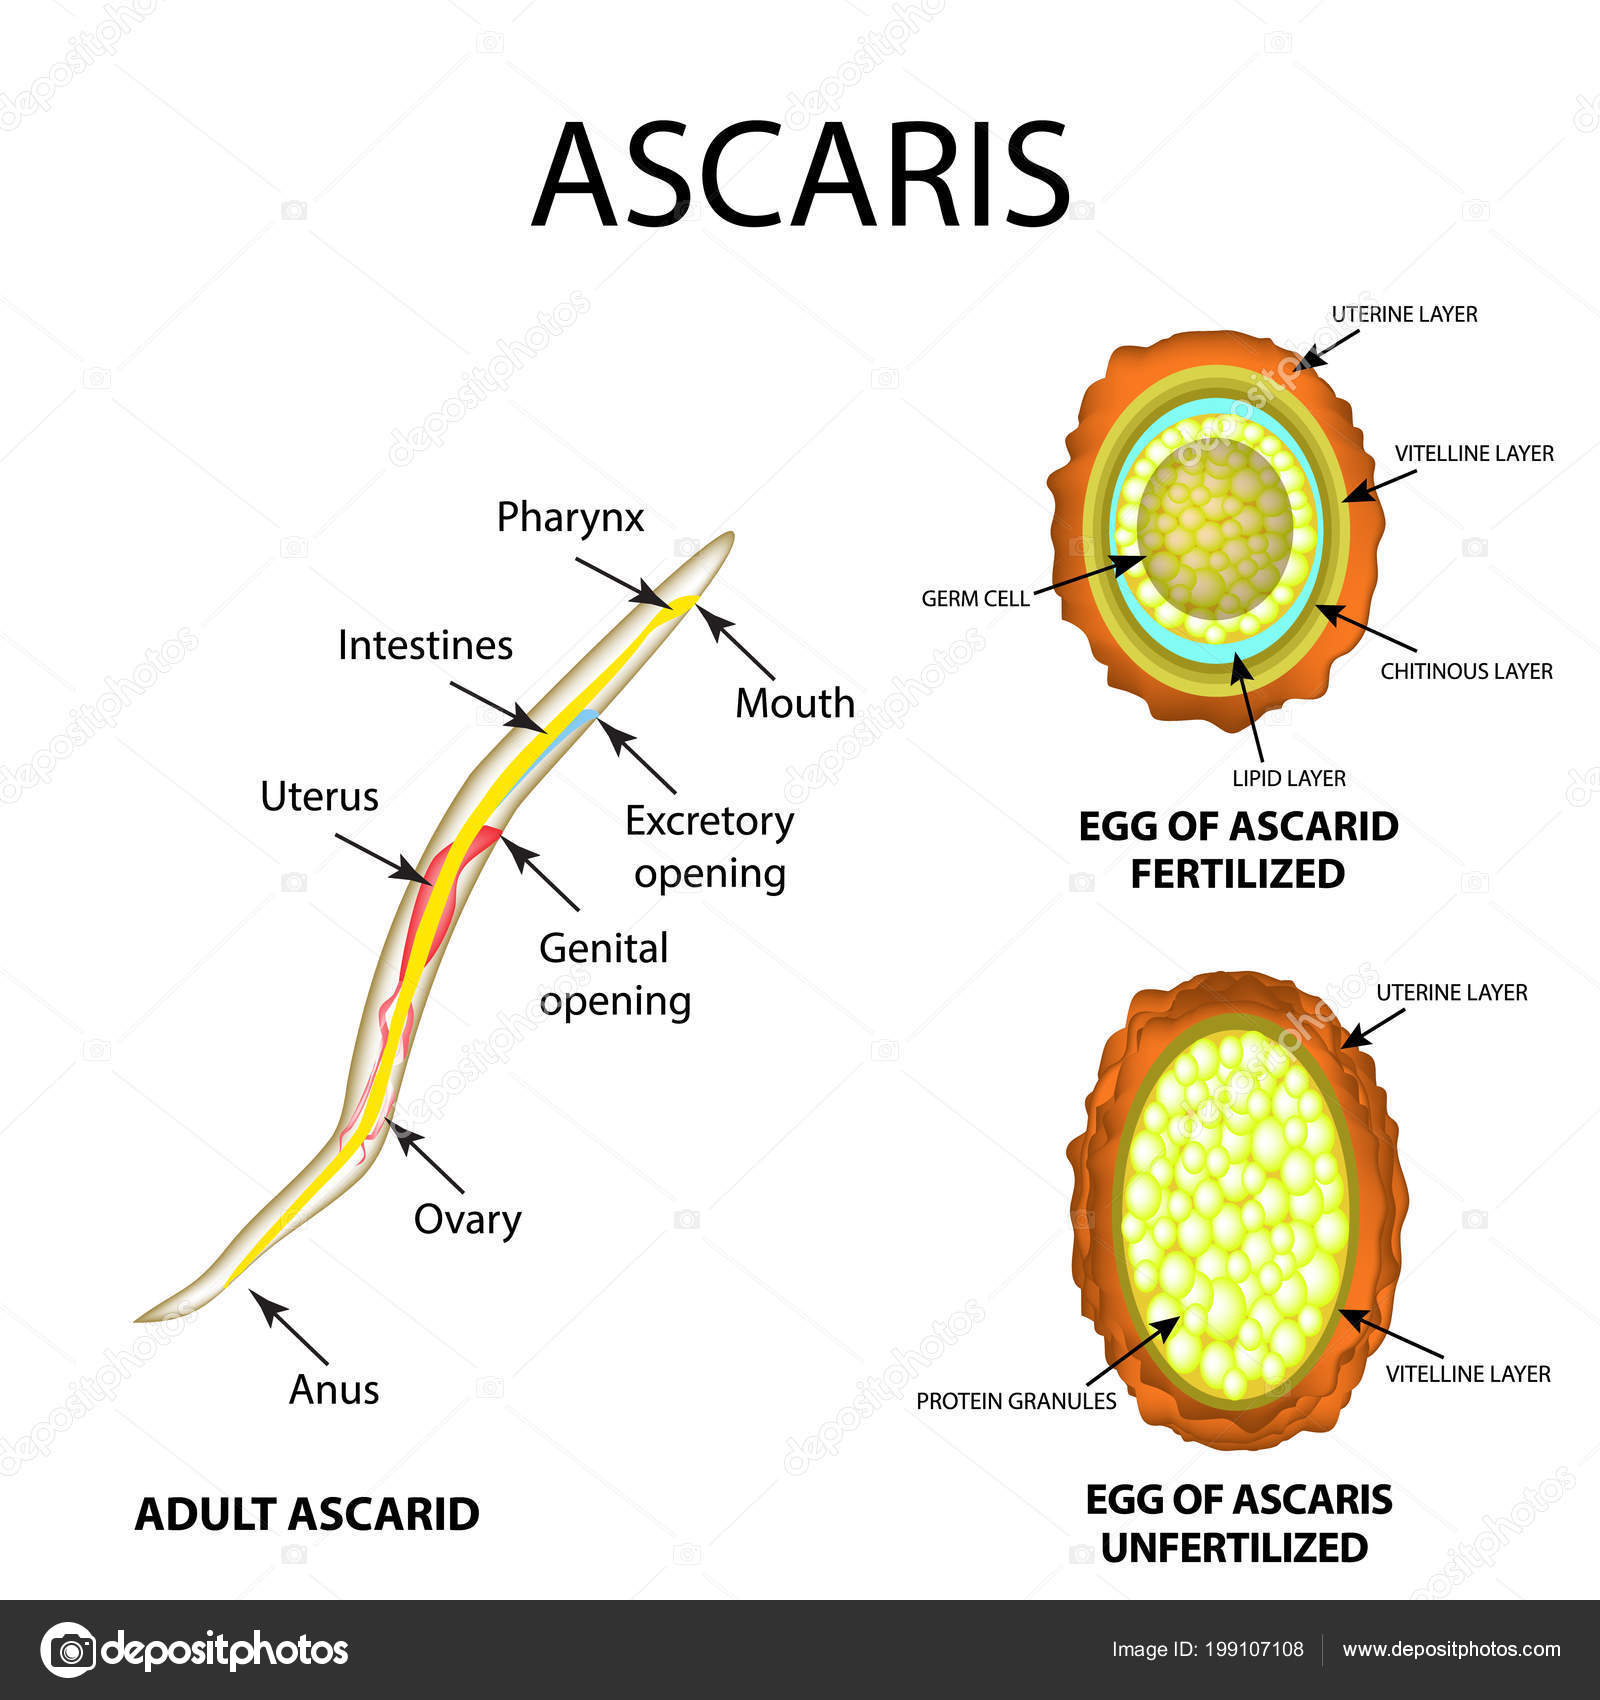 Ascaris szerkezete)